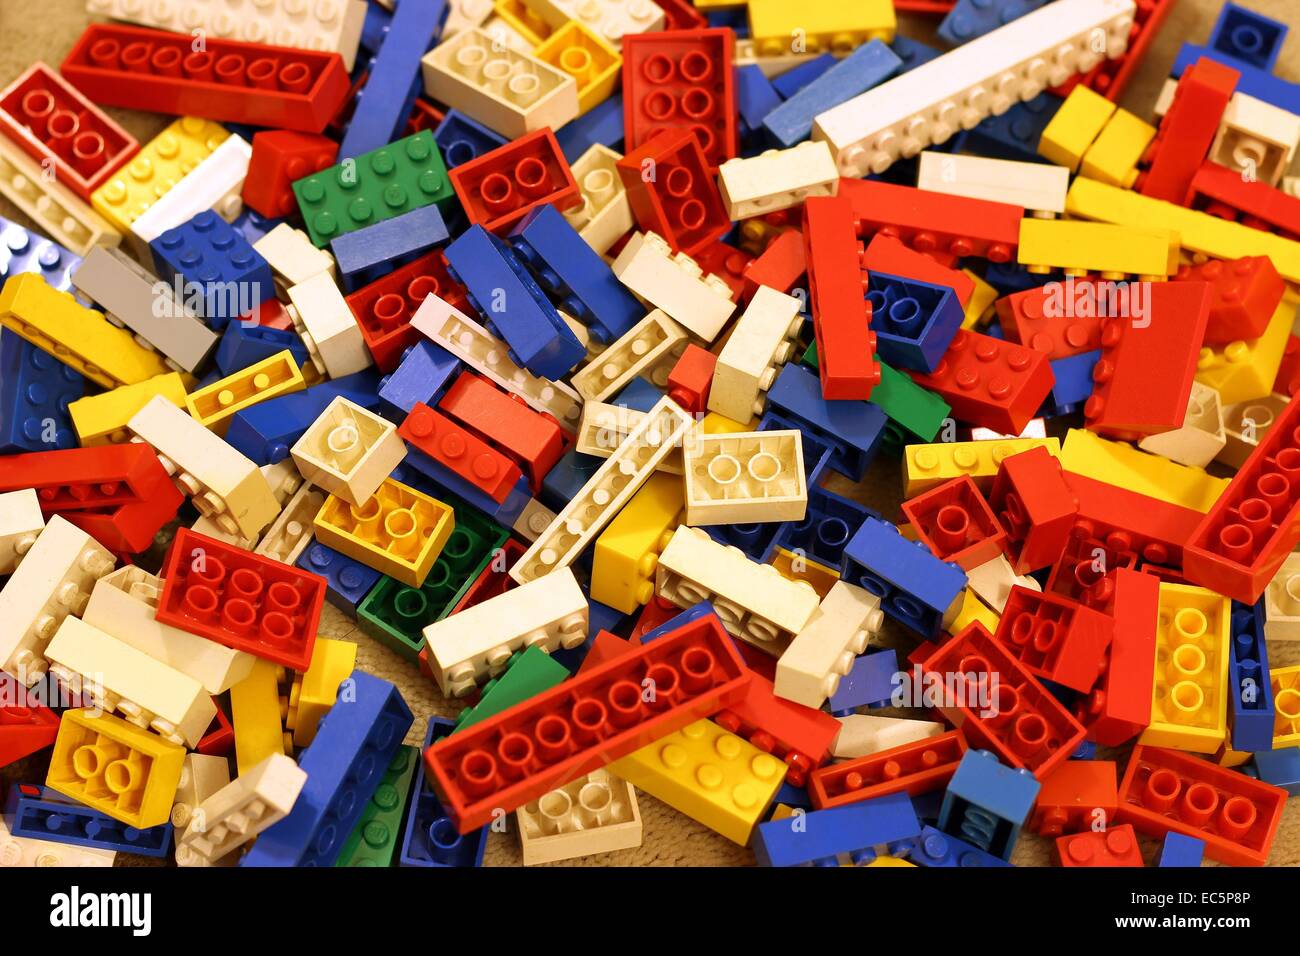 Lego pieces on carpet Stock Photo